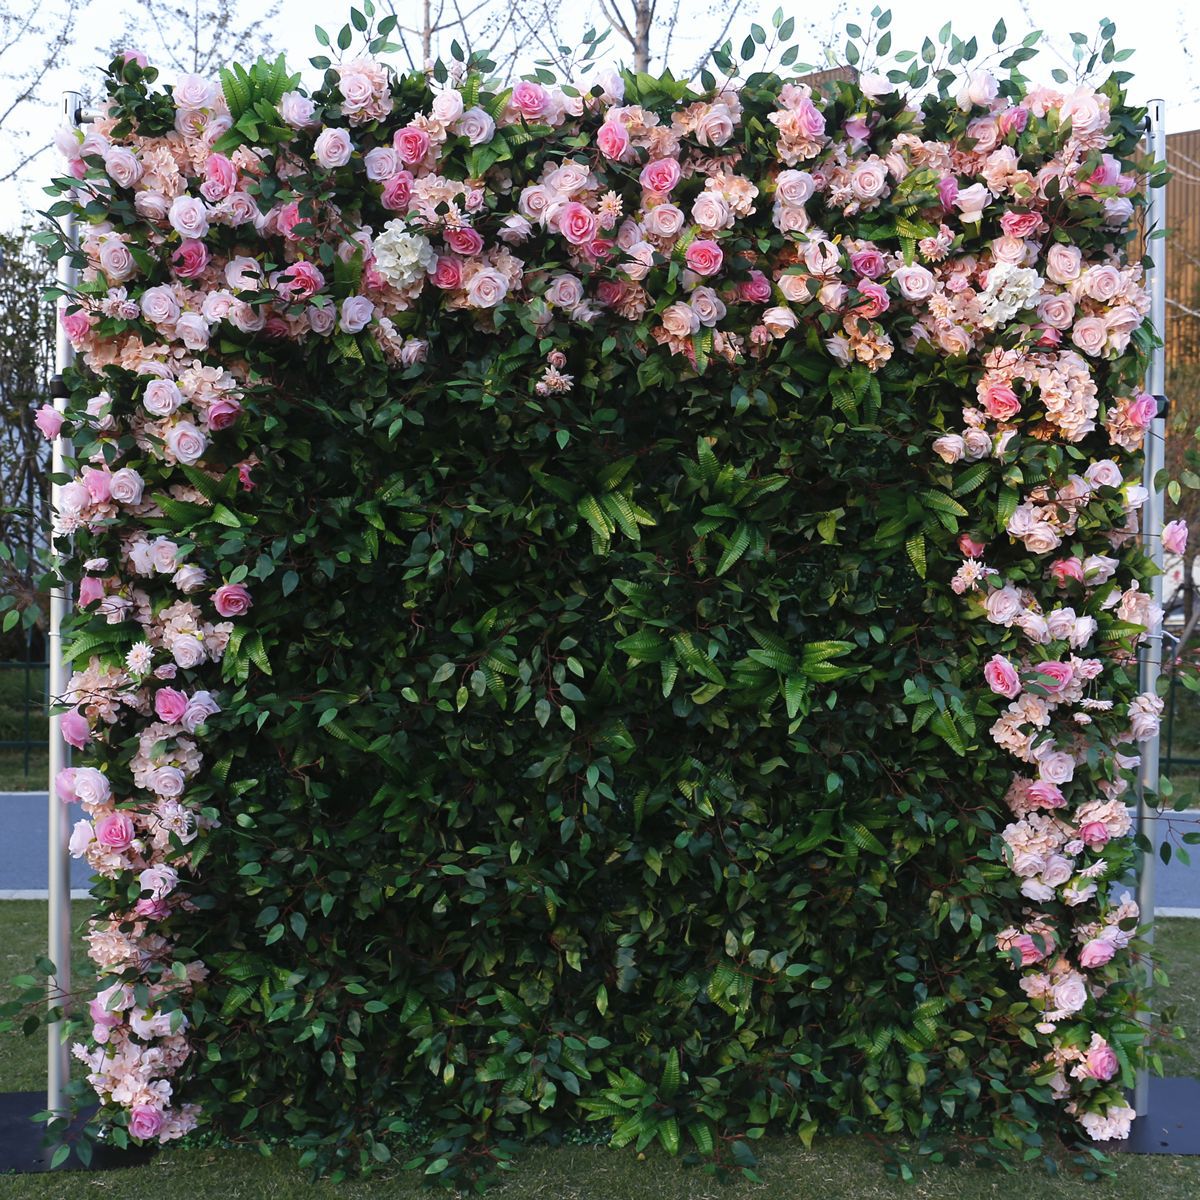 Simulasi tembok latar mburi kembang tembok tembok planter ijo, dekorasi pernikahan kegiatan outdoor